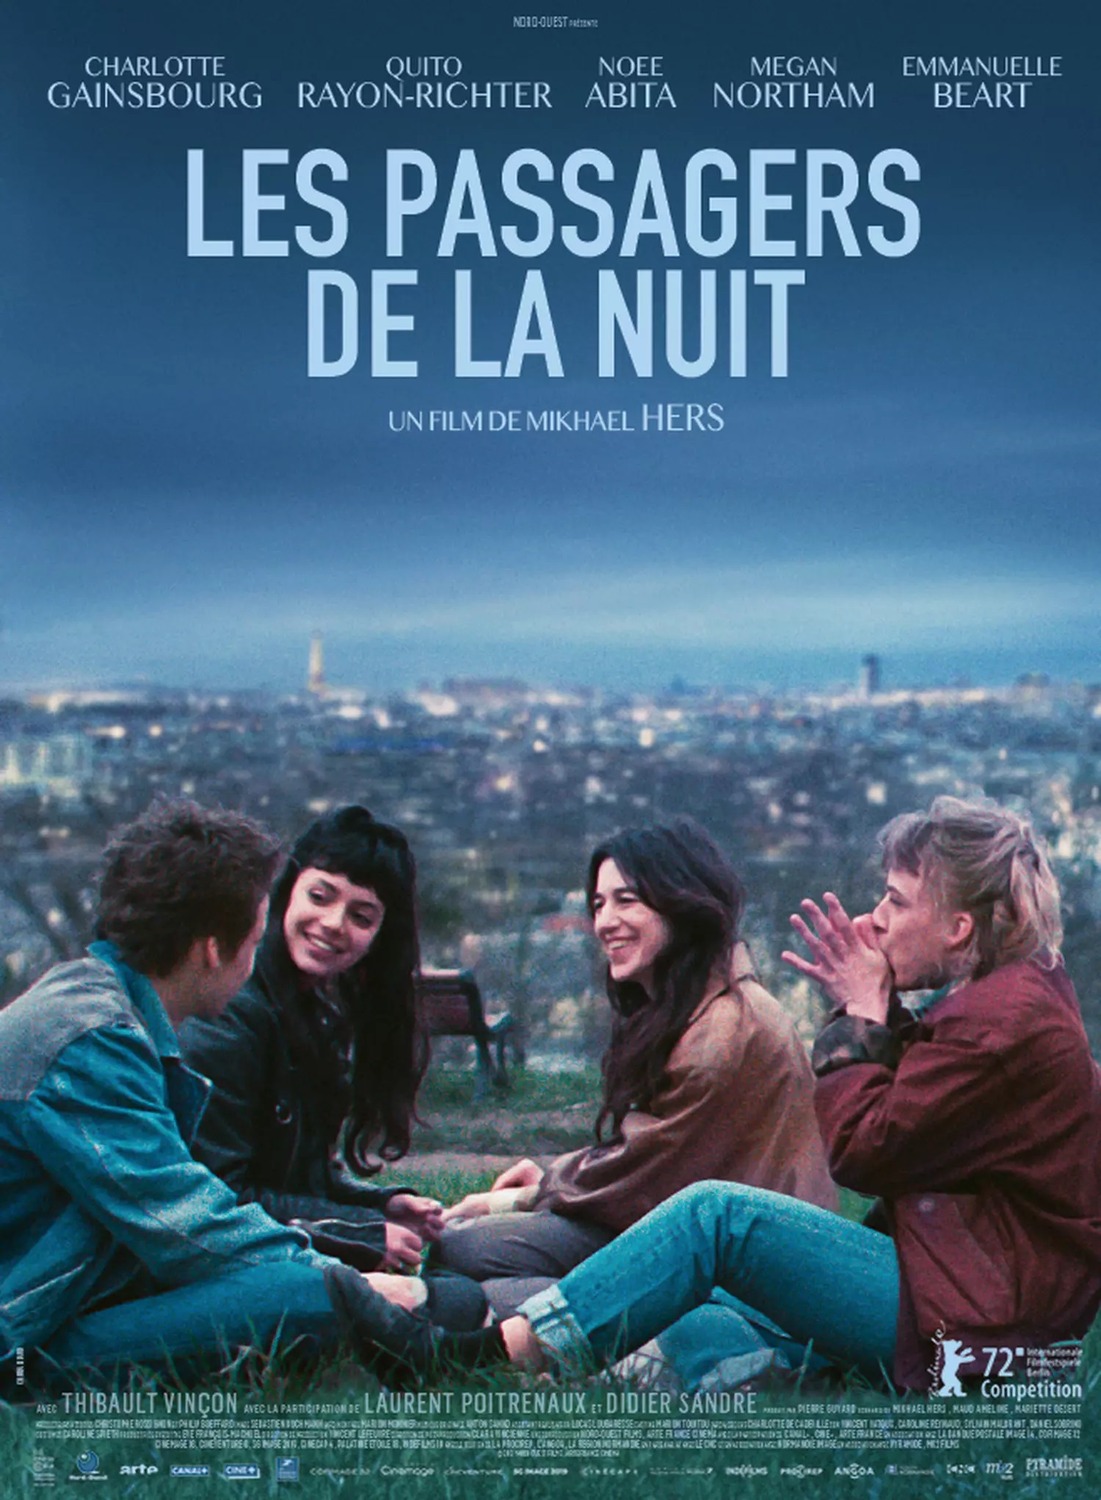 Extra Large Movie Poster Image for Les passagers de la nuit 